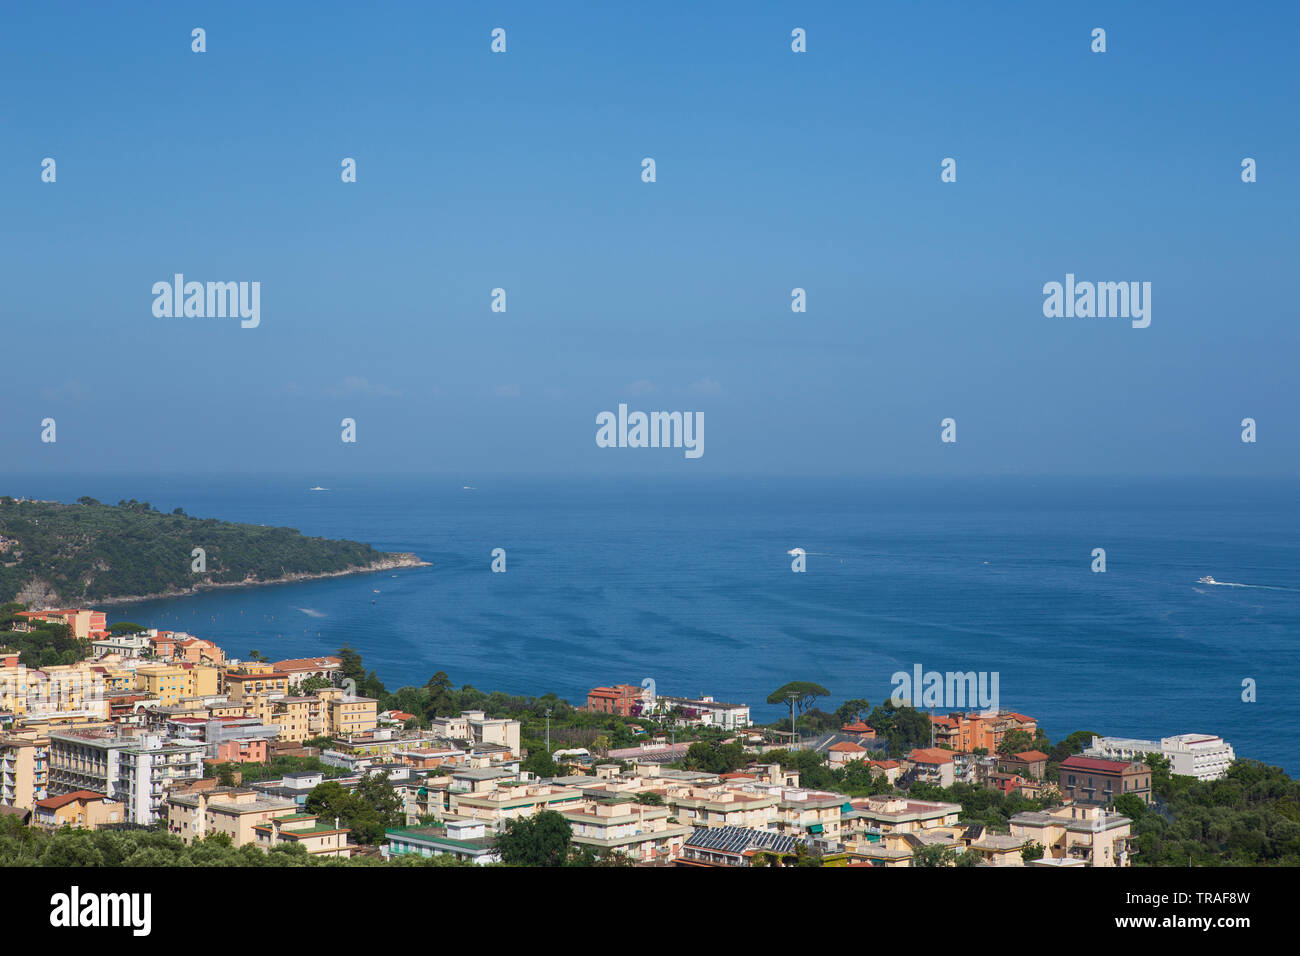 Sorrento, eine Stadt mit Blick auf die Bucht von Neapel im Süden Italiens. Stockfoto